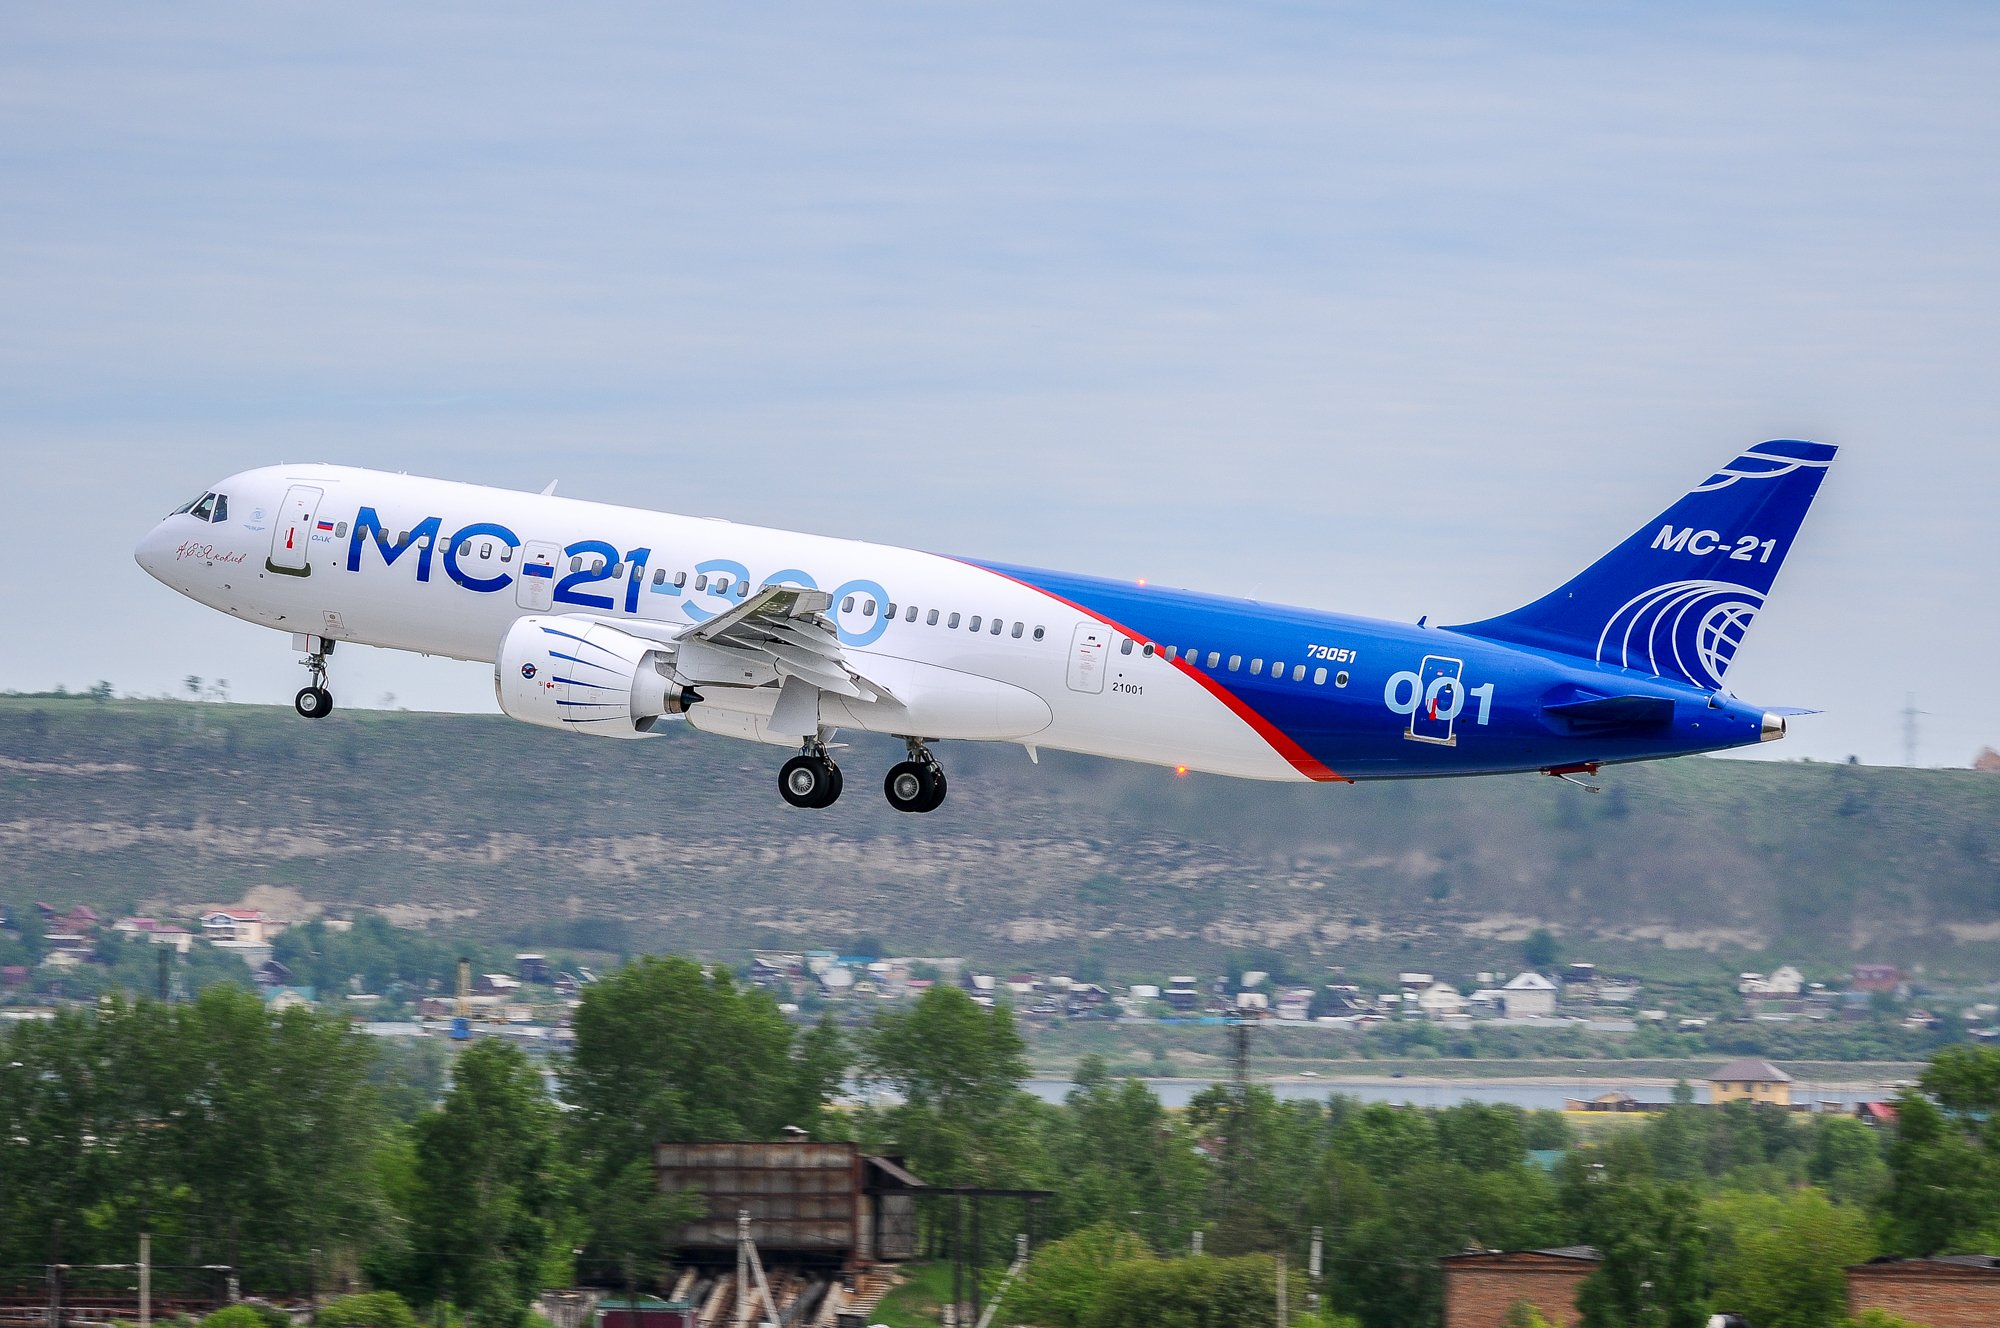 Irkut MC-21 ilk uçuşunu gerçekleştirdi (28 Mayıs 2017)